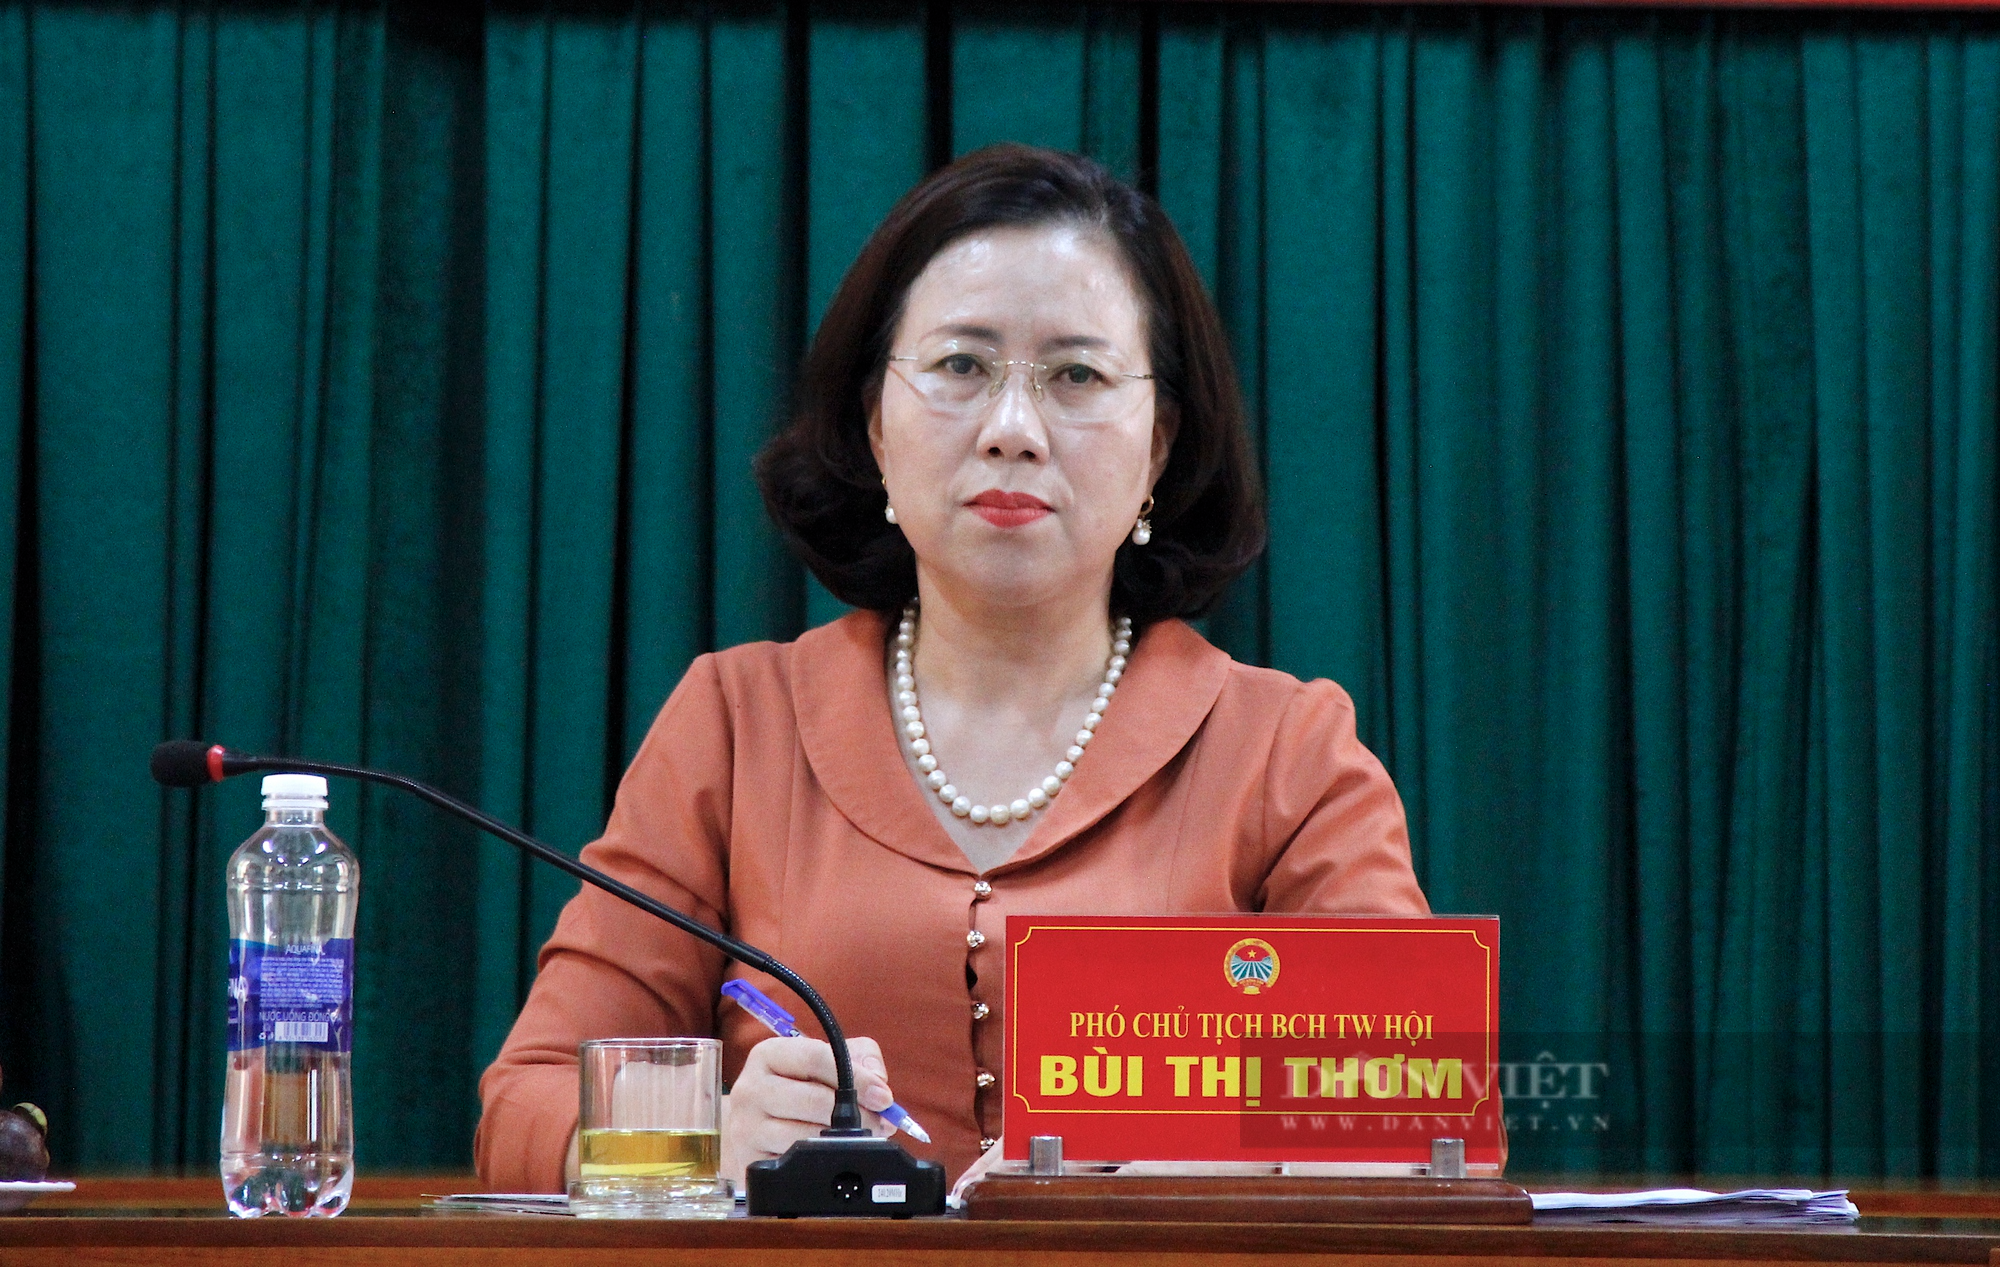 Phó Chủ tịch TƯ Hội NDVN Bùi Thị Thơm: Sản xuất nông nghiệp phù hợp nhu cầu thị trường- Ảnh 3.